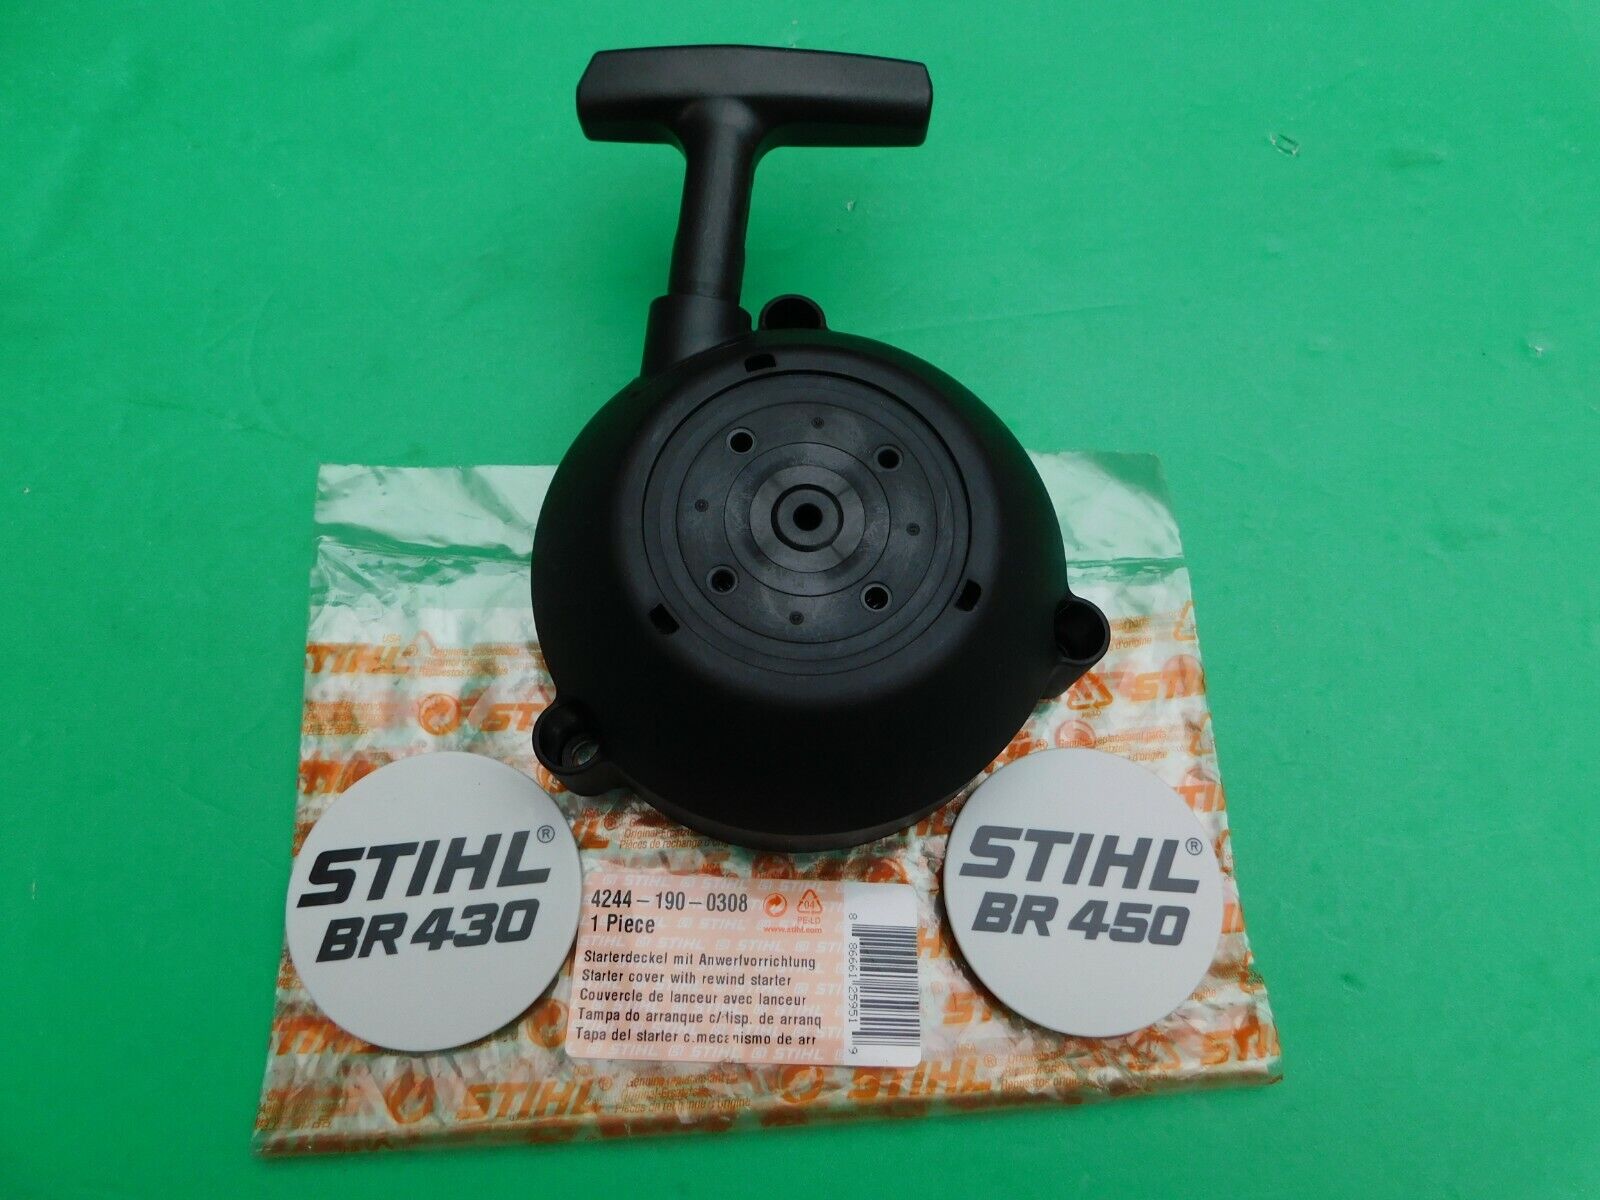 STIHL OEM Rewind Recoil Starter ASM 4244-190-0308 Br430 Br450 for sale  online